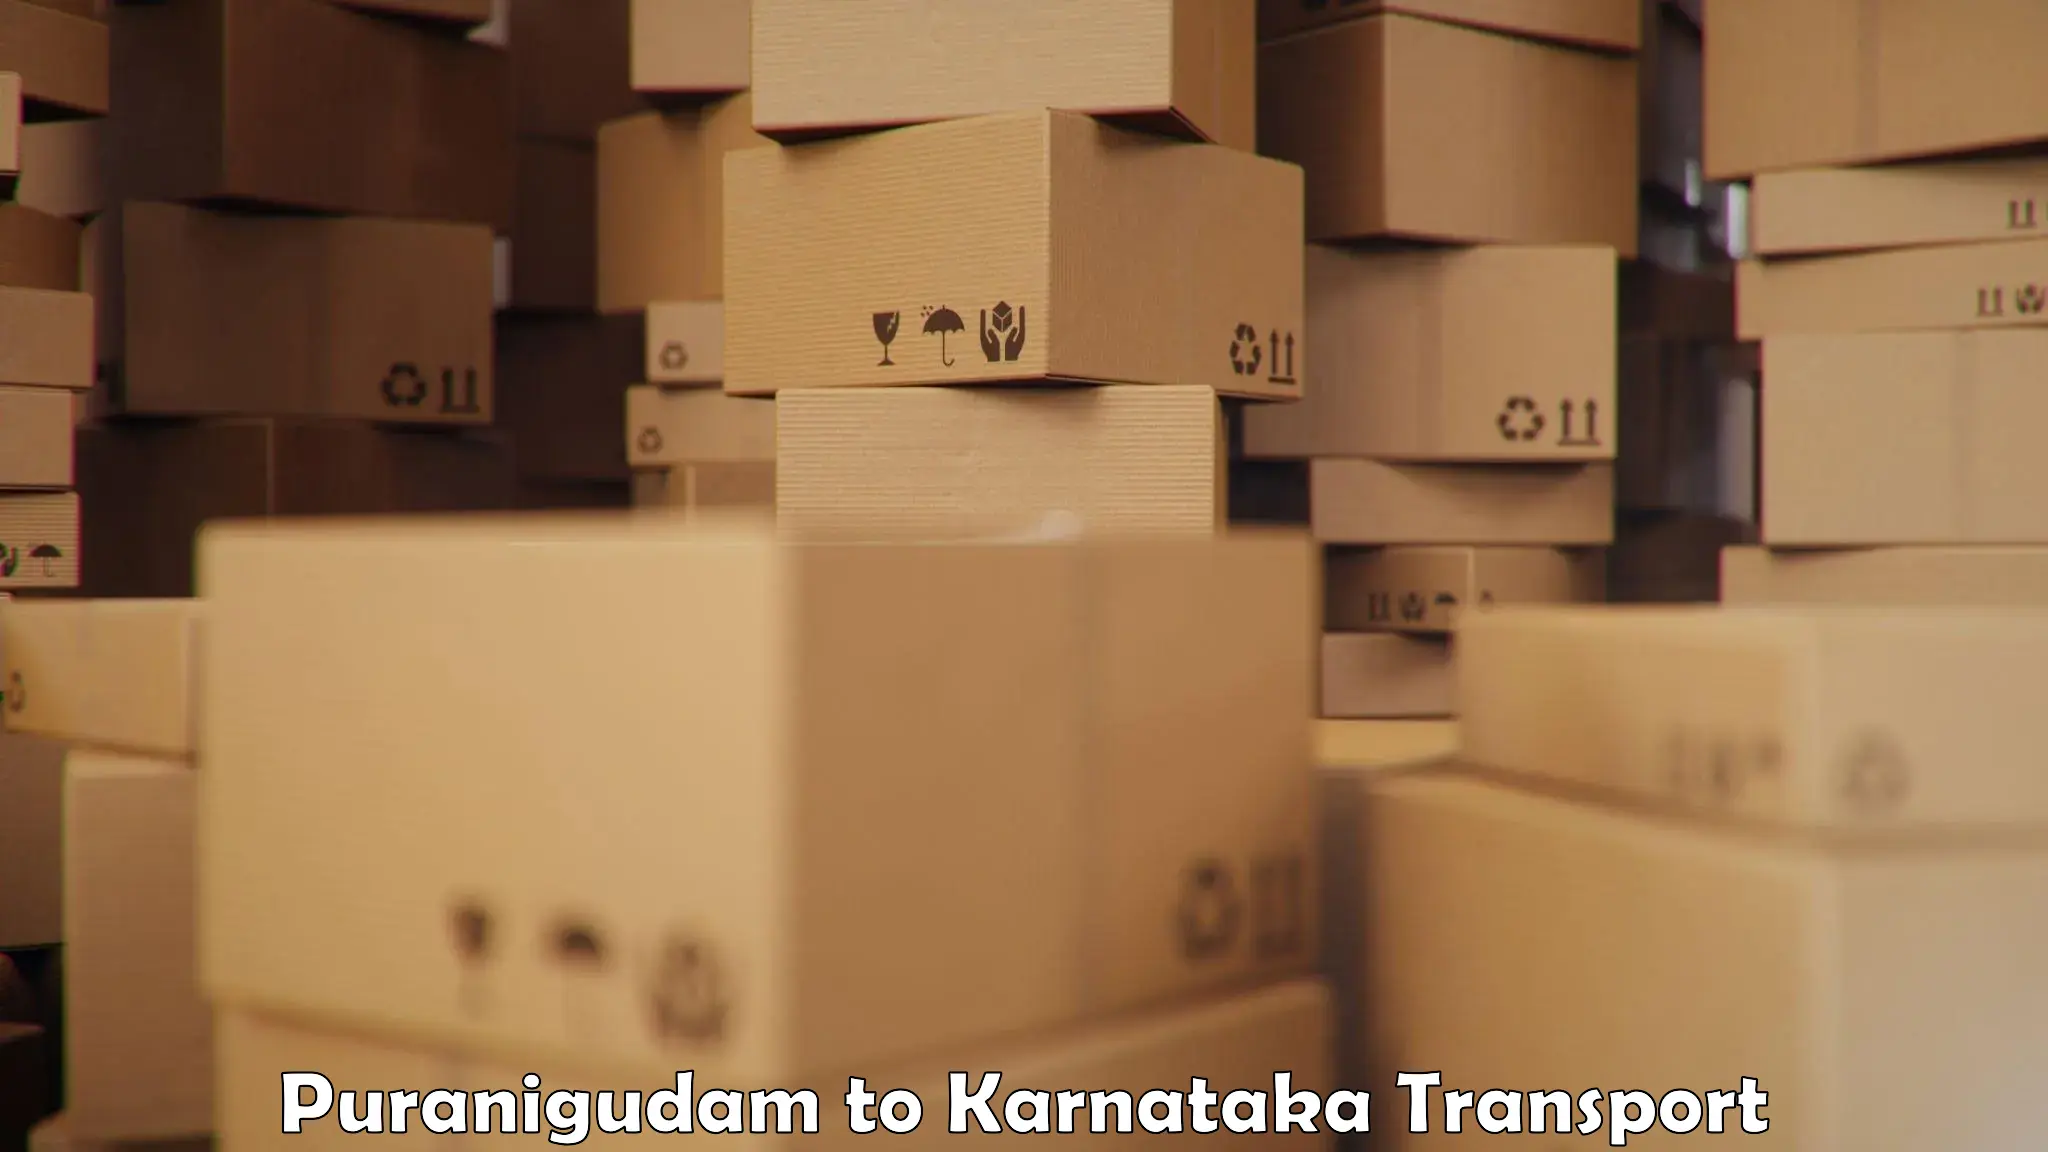 Transport in sharing Puranigudam to Karnataka